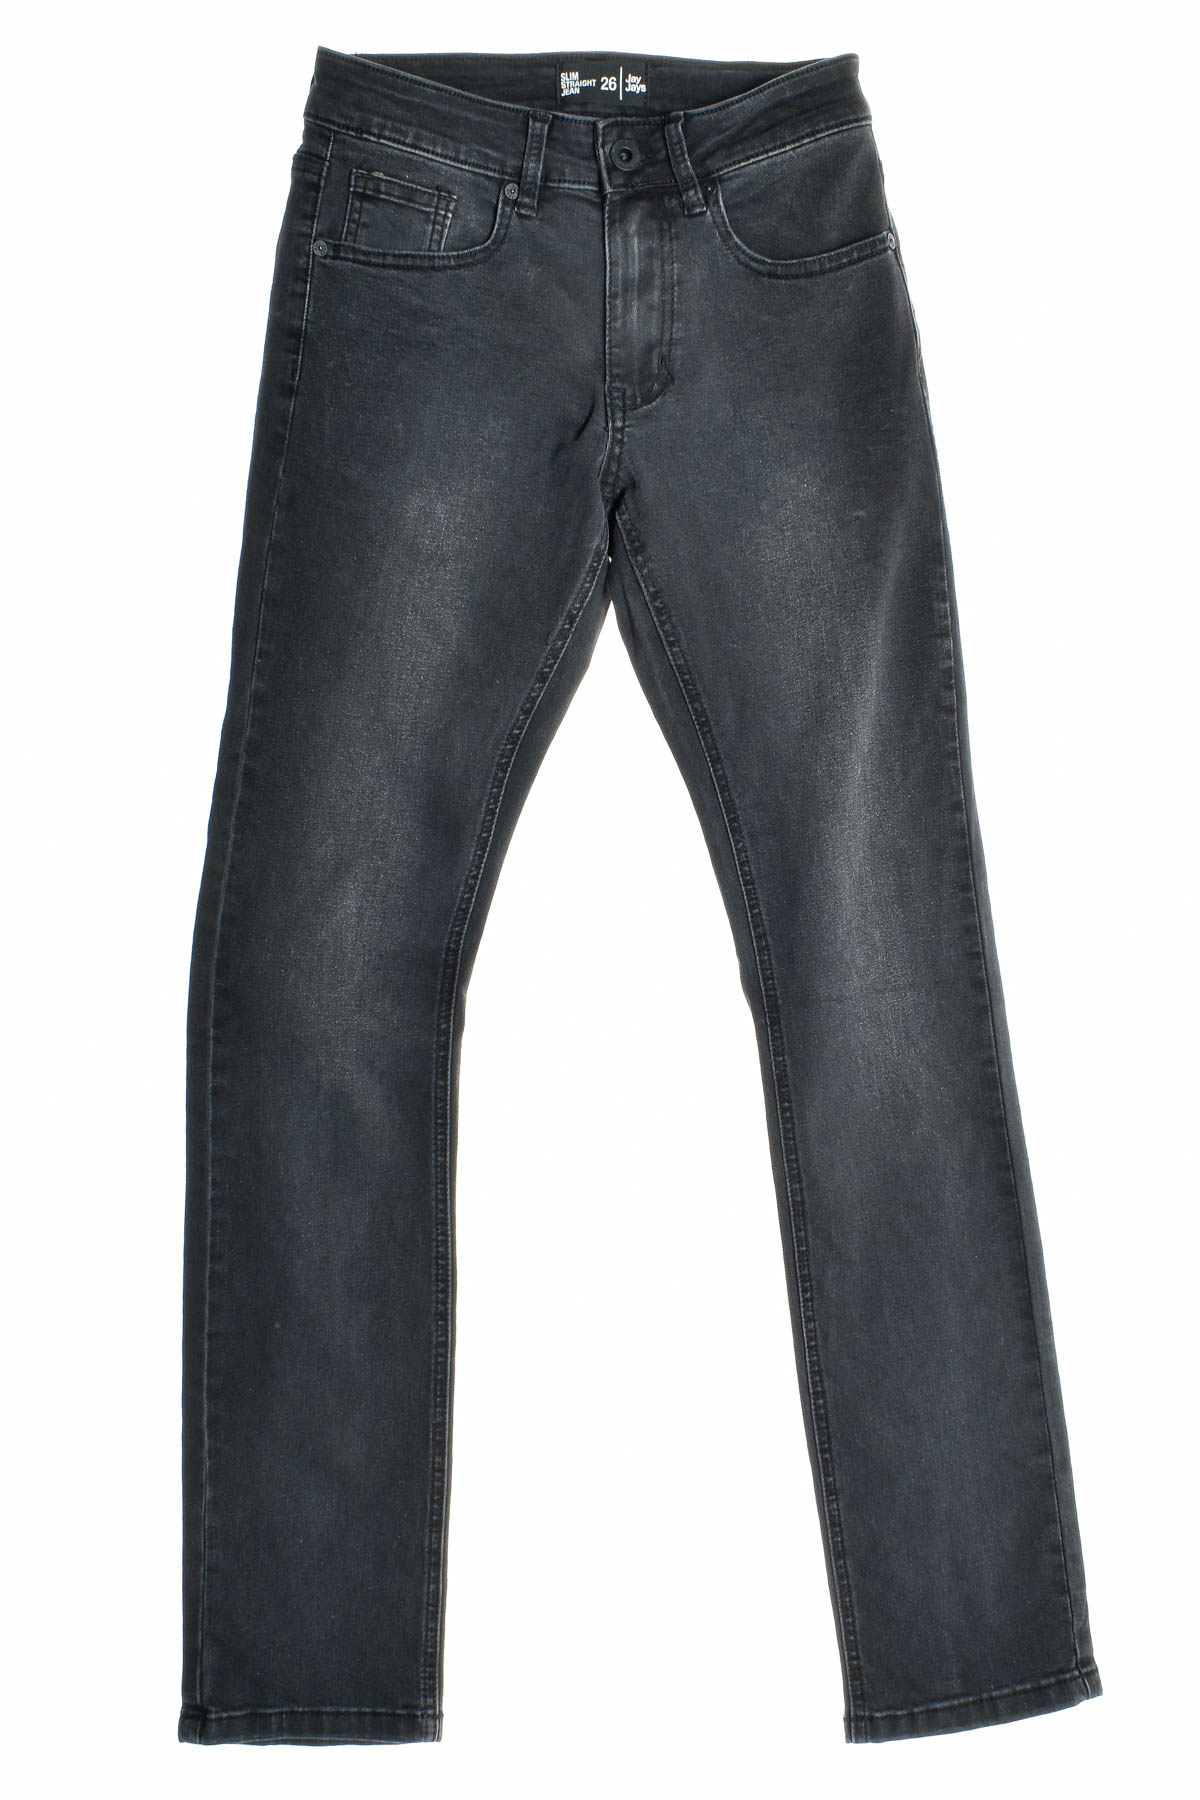 Jeans pentru bărbăți - Jay Jays - 0